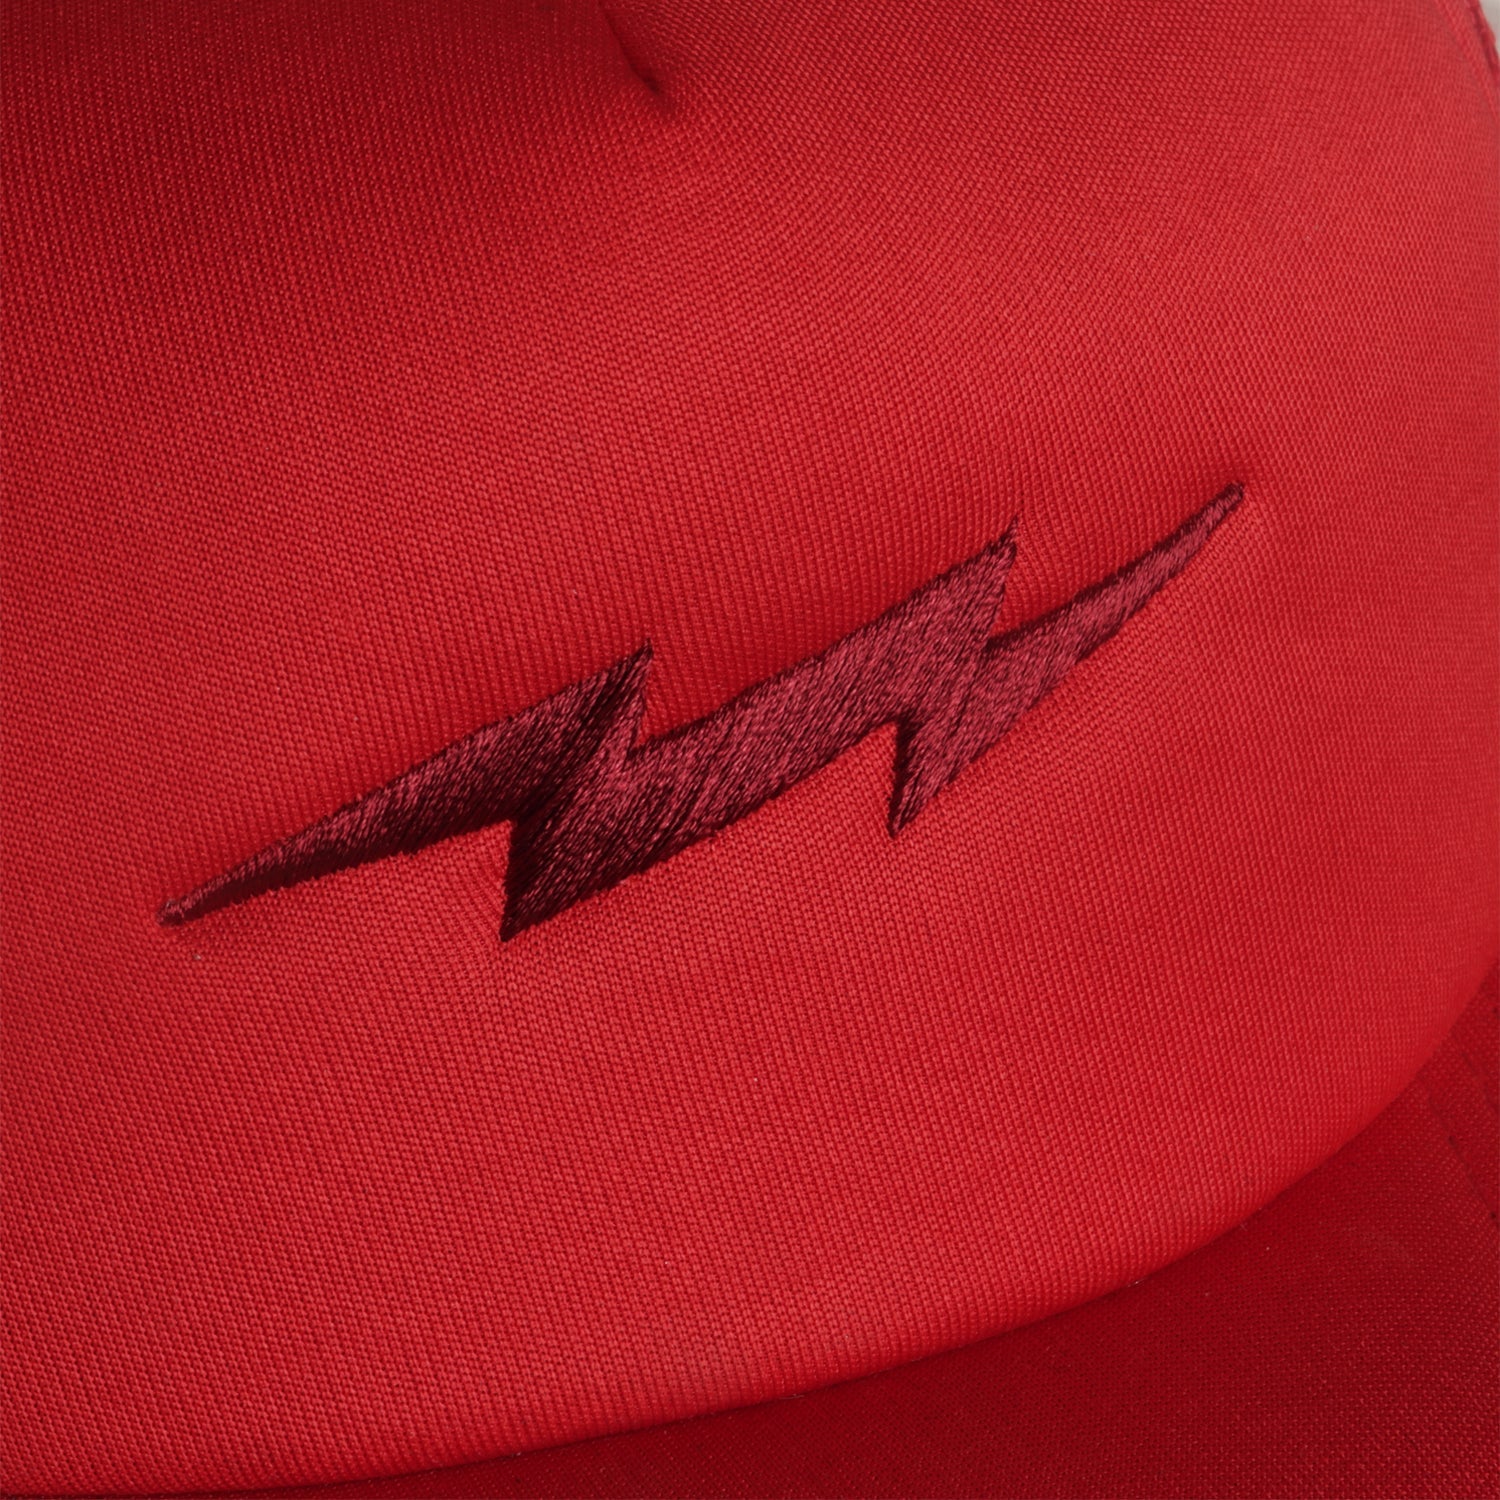 OG Thunder Trucker Cap Red